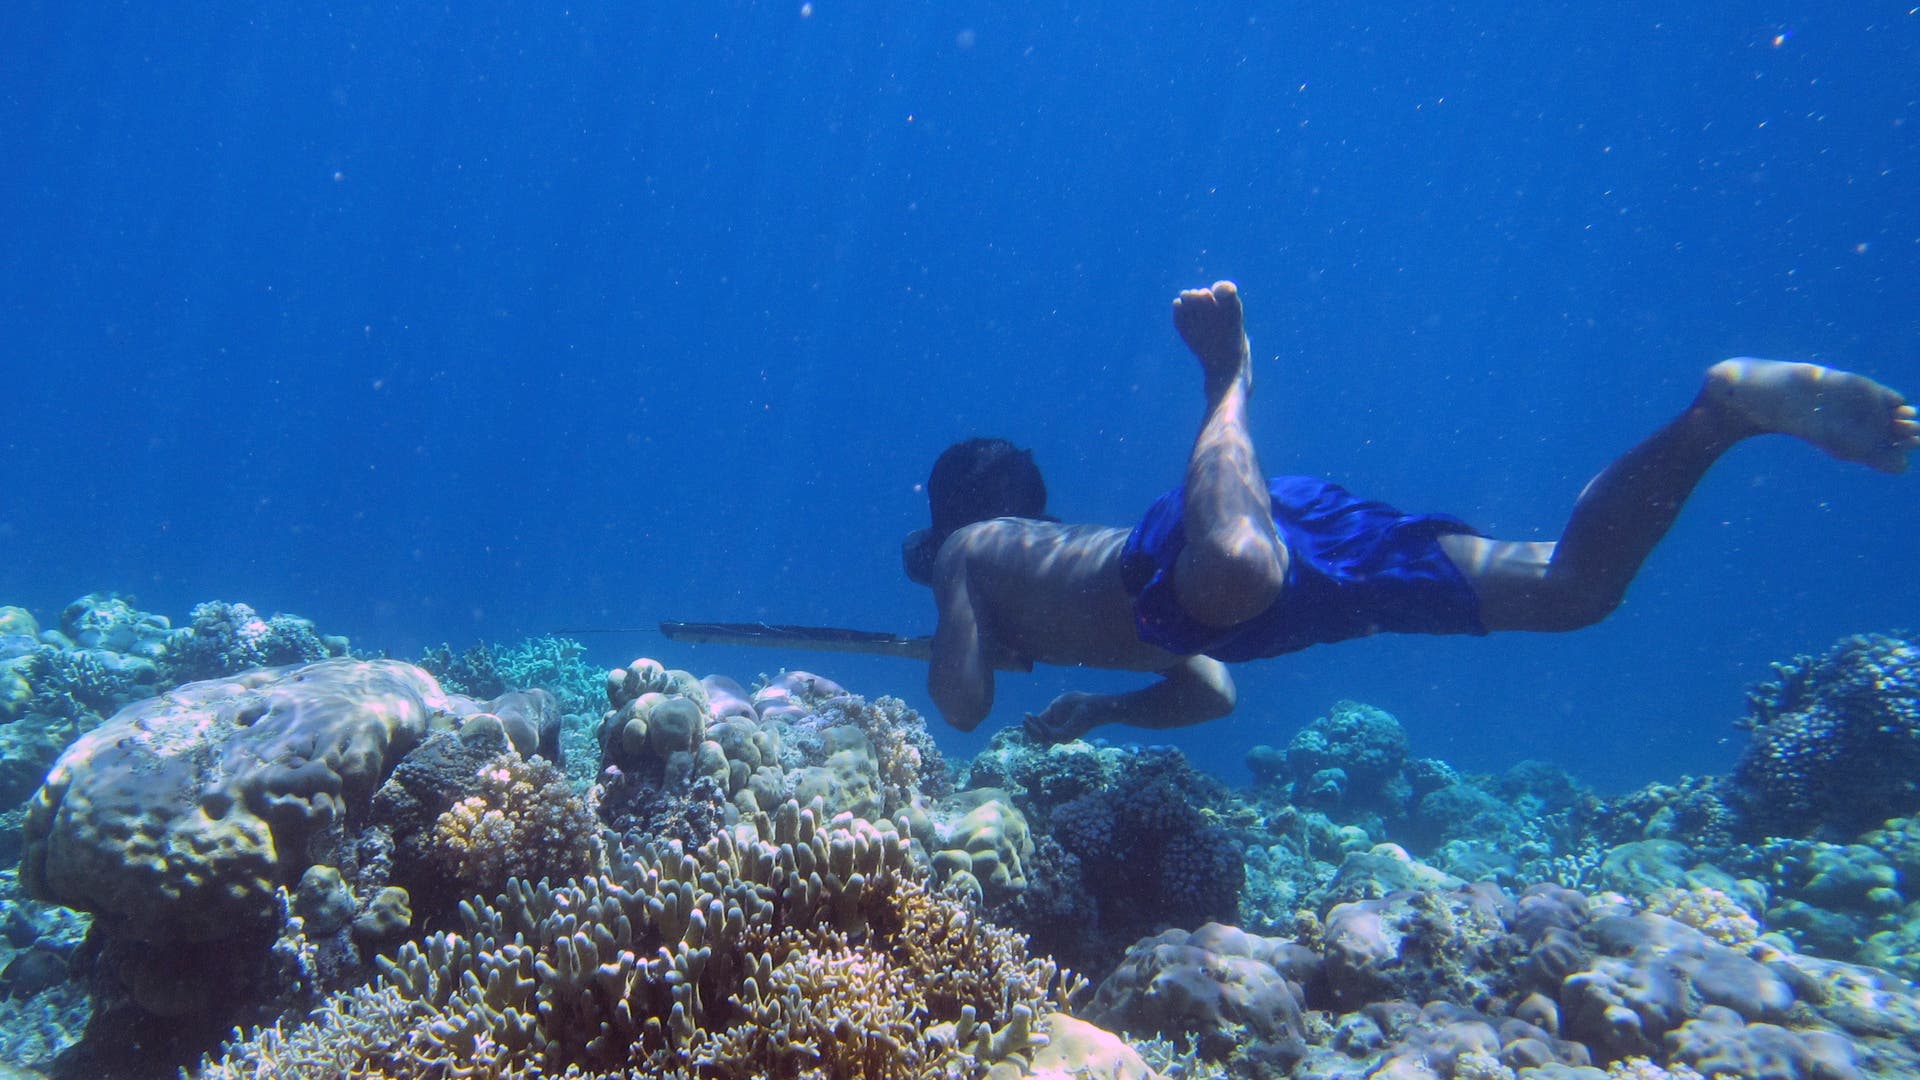 Indonesia: Adaptasi genetik membantu pengembara laut untuk menyelam